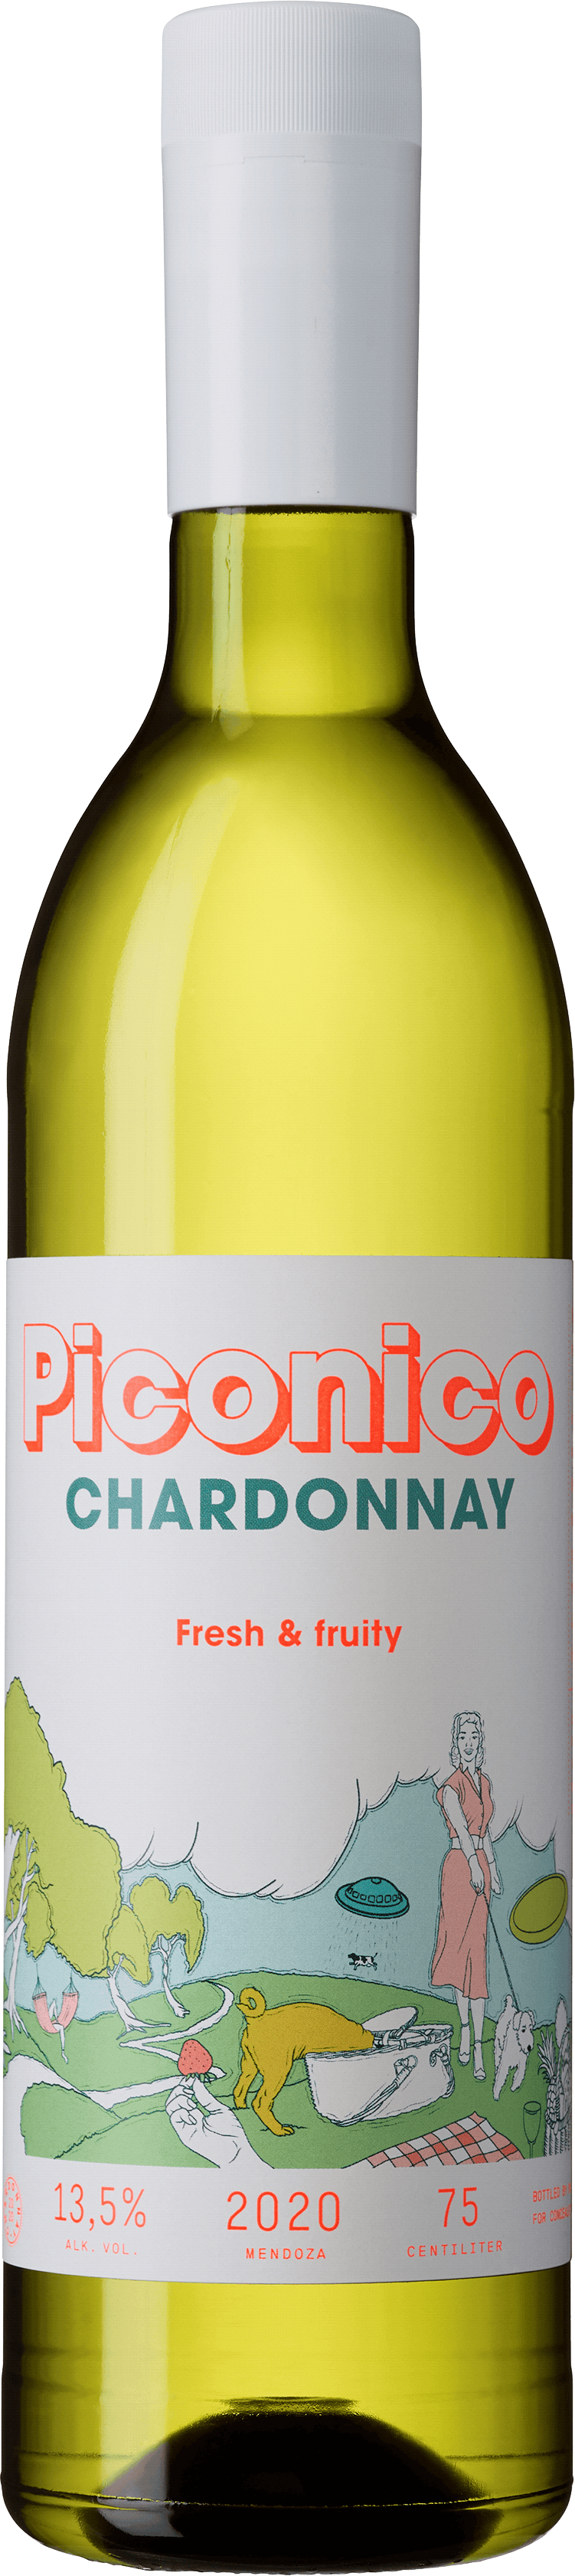 Piconico Chardonnay